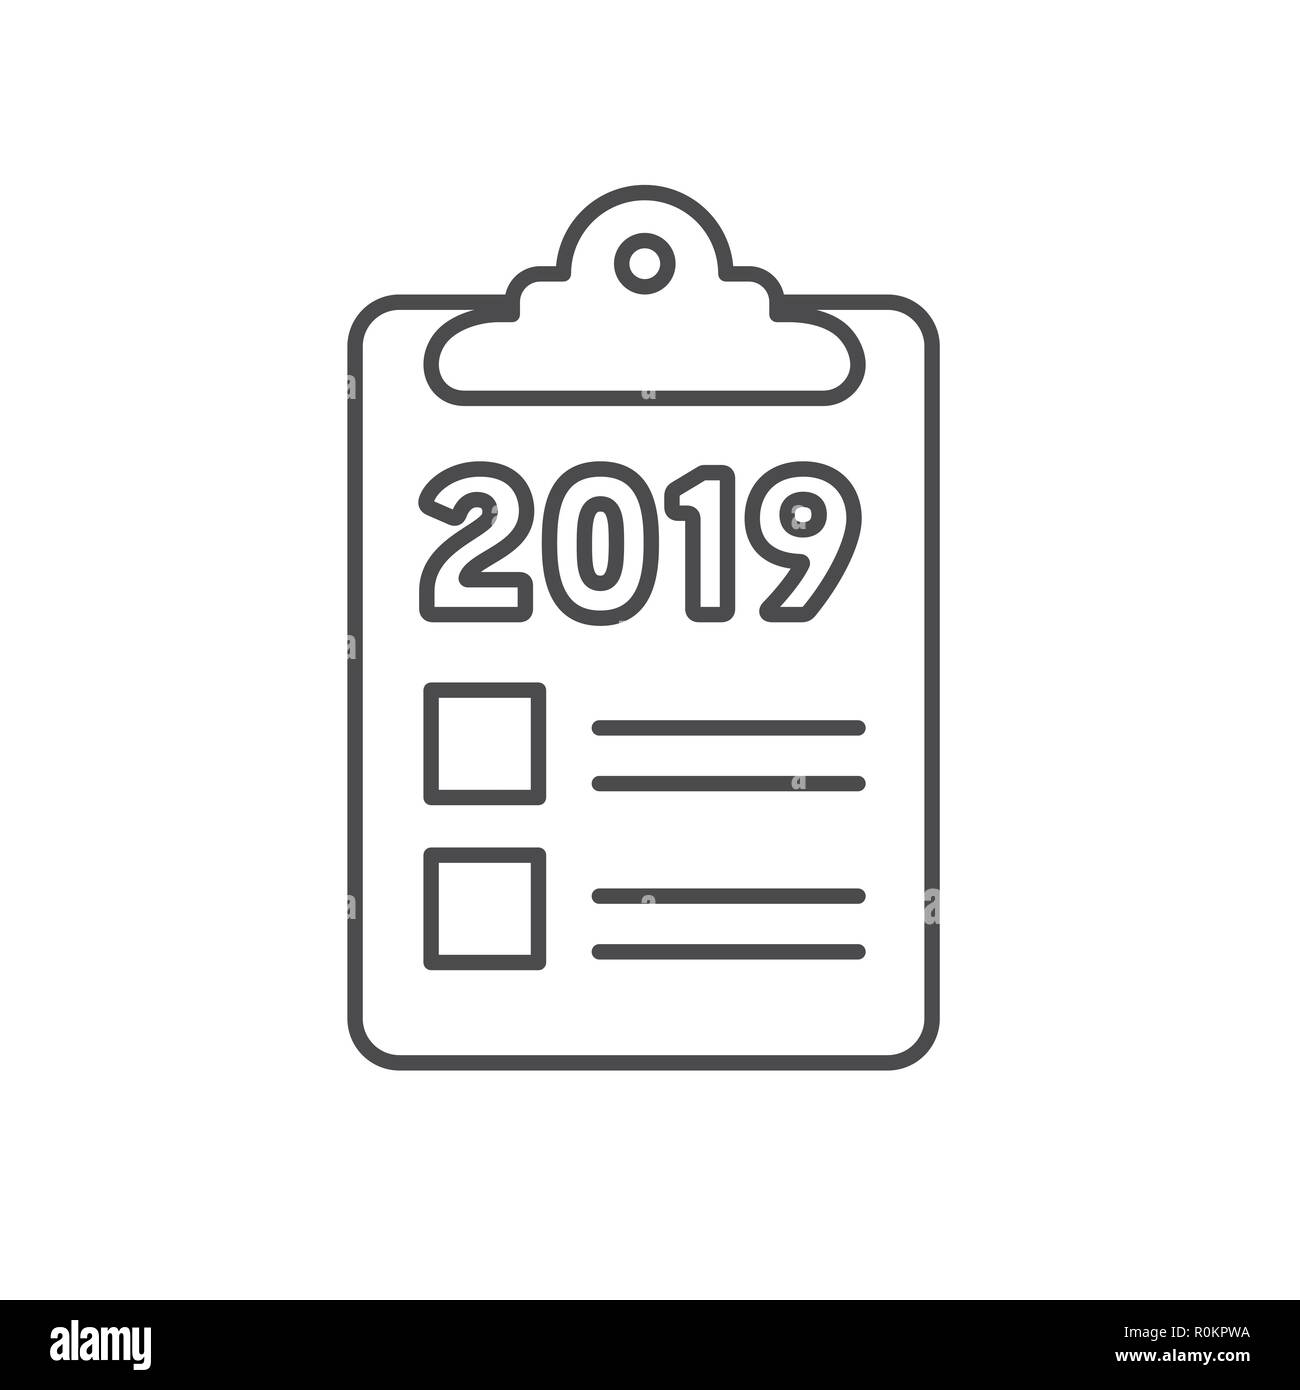 Objectifs 2019 l'année 2019 avec des graphiques vectoriels et des images de style artistique Illustration de Vecteur